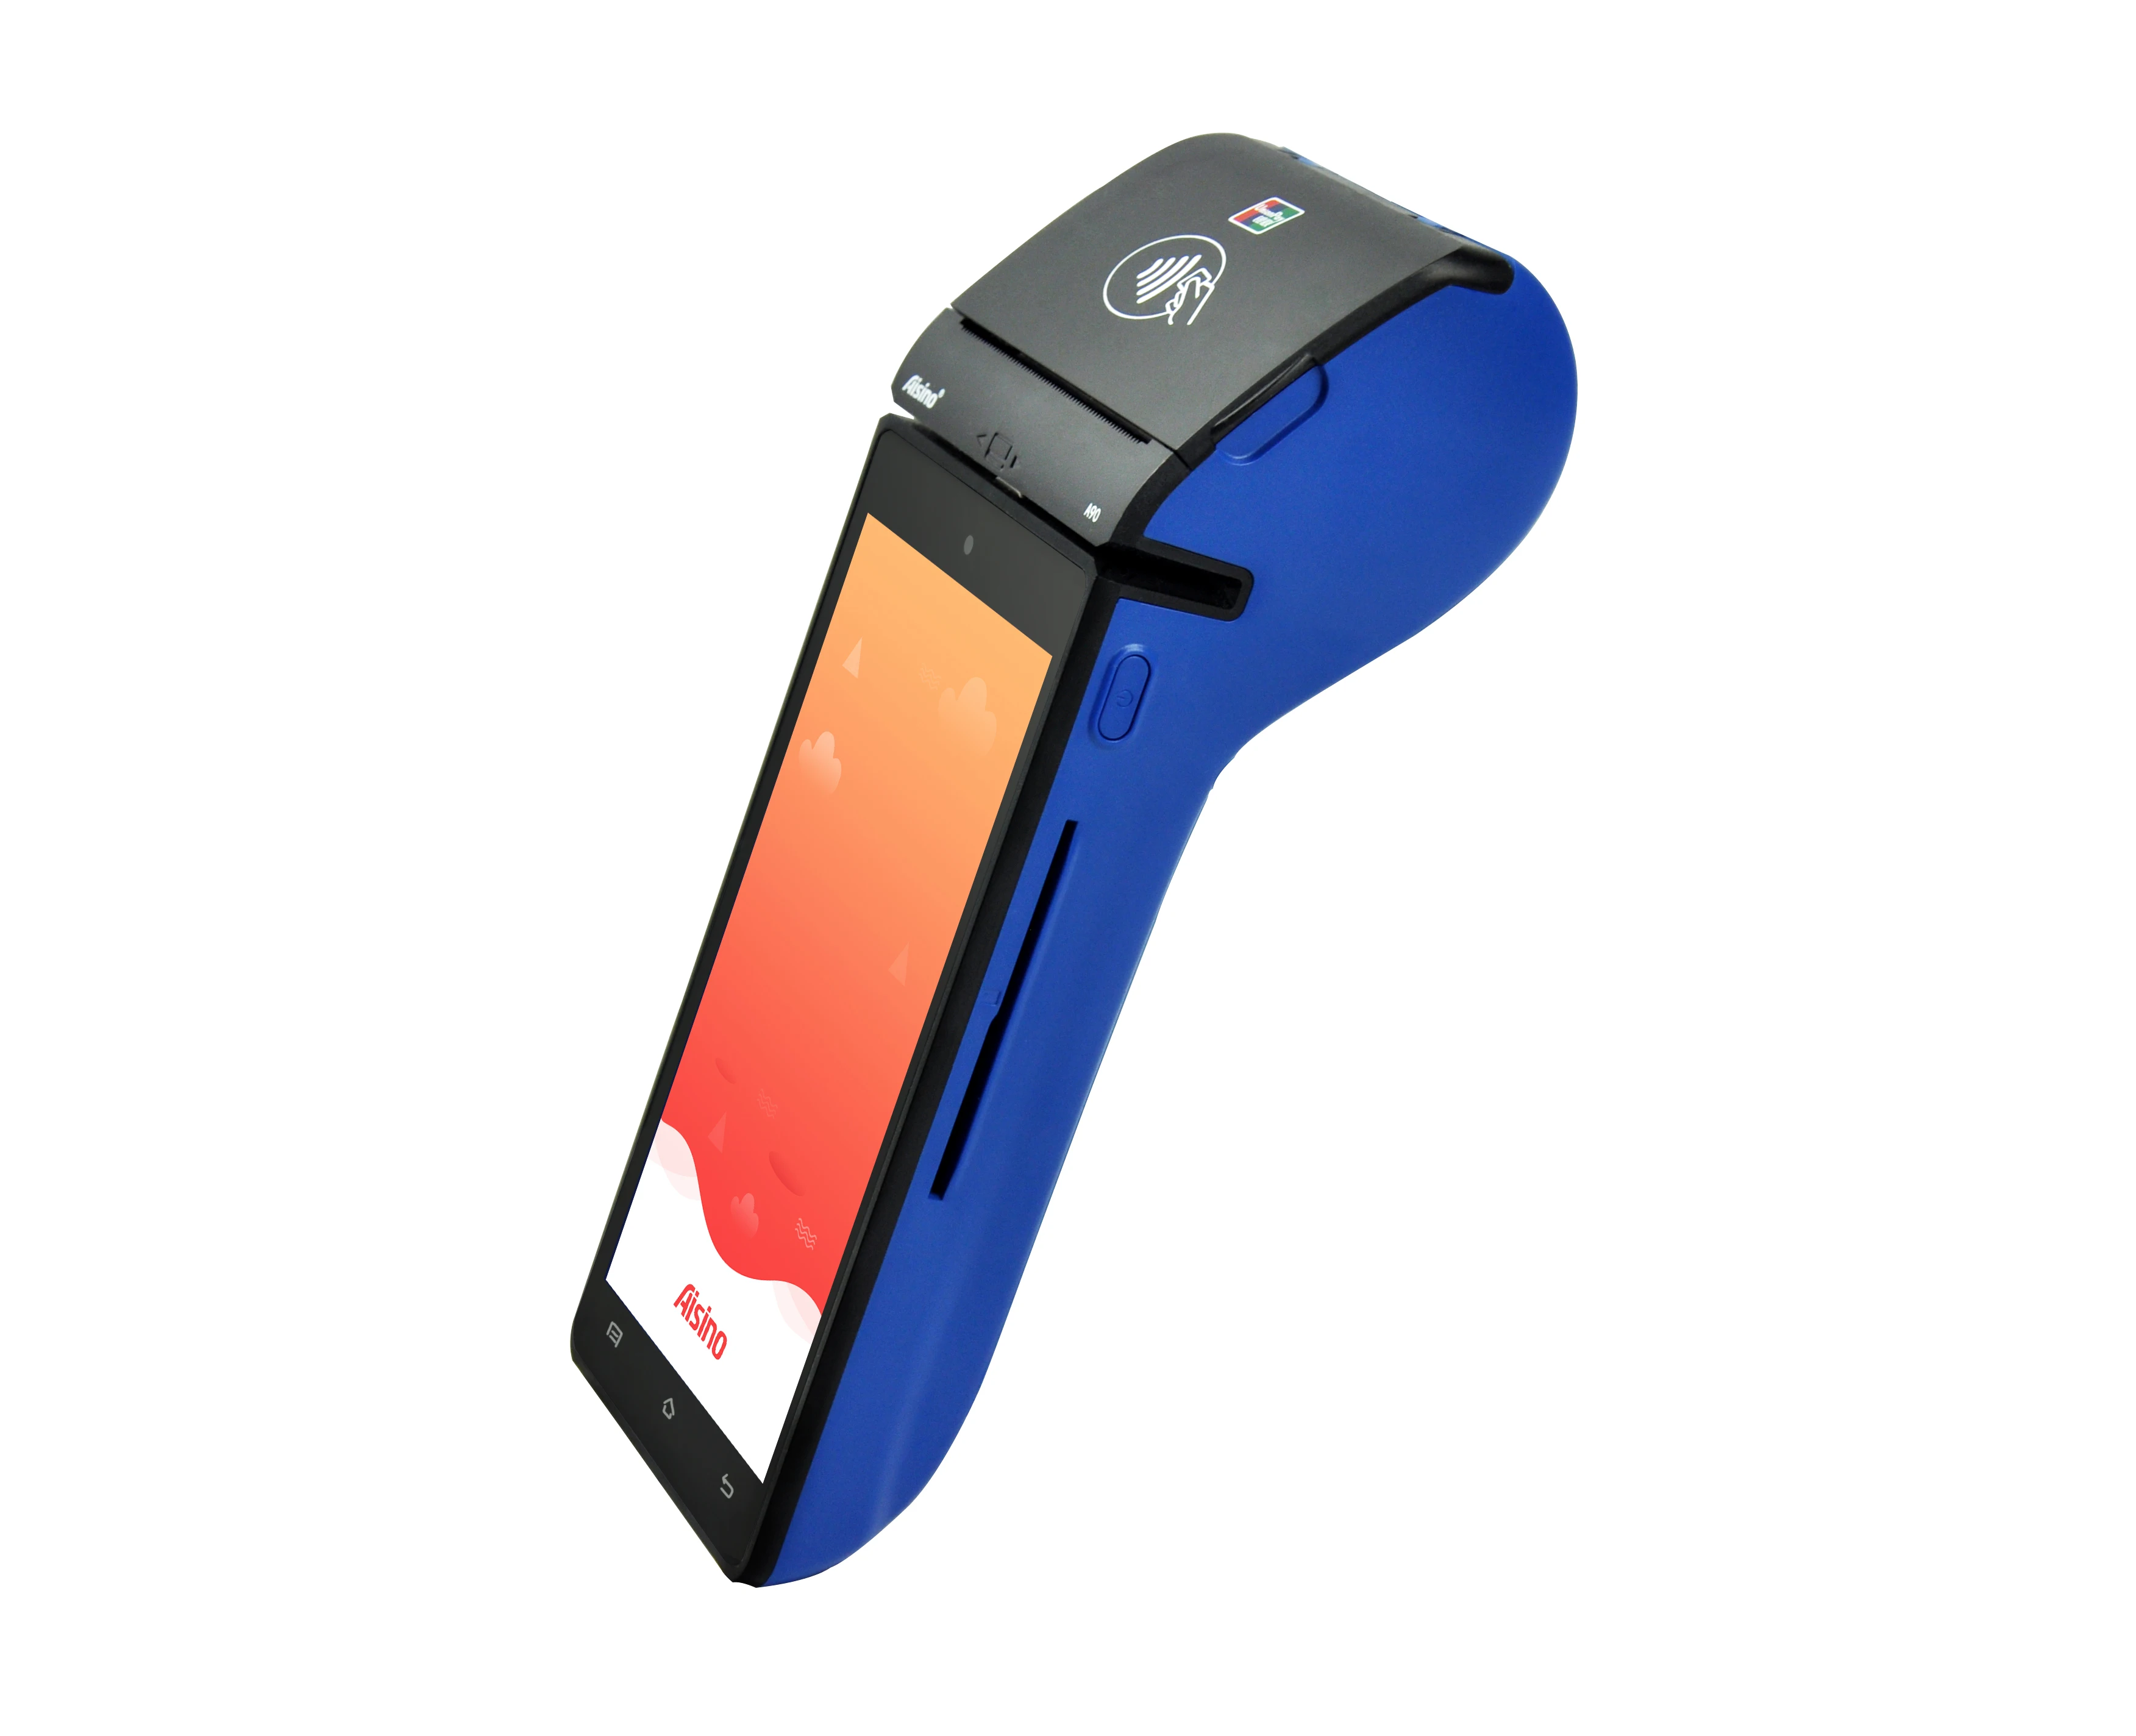  2020 Новый Универсальный Android POS 5 дюймовый сенсорный экран MSR IC NFC 1D/2D